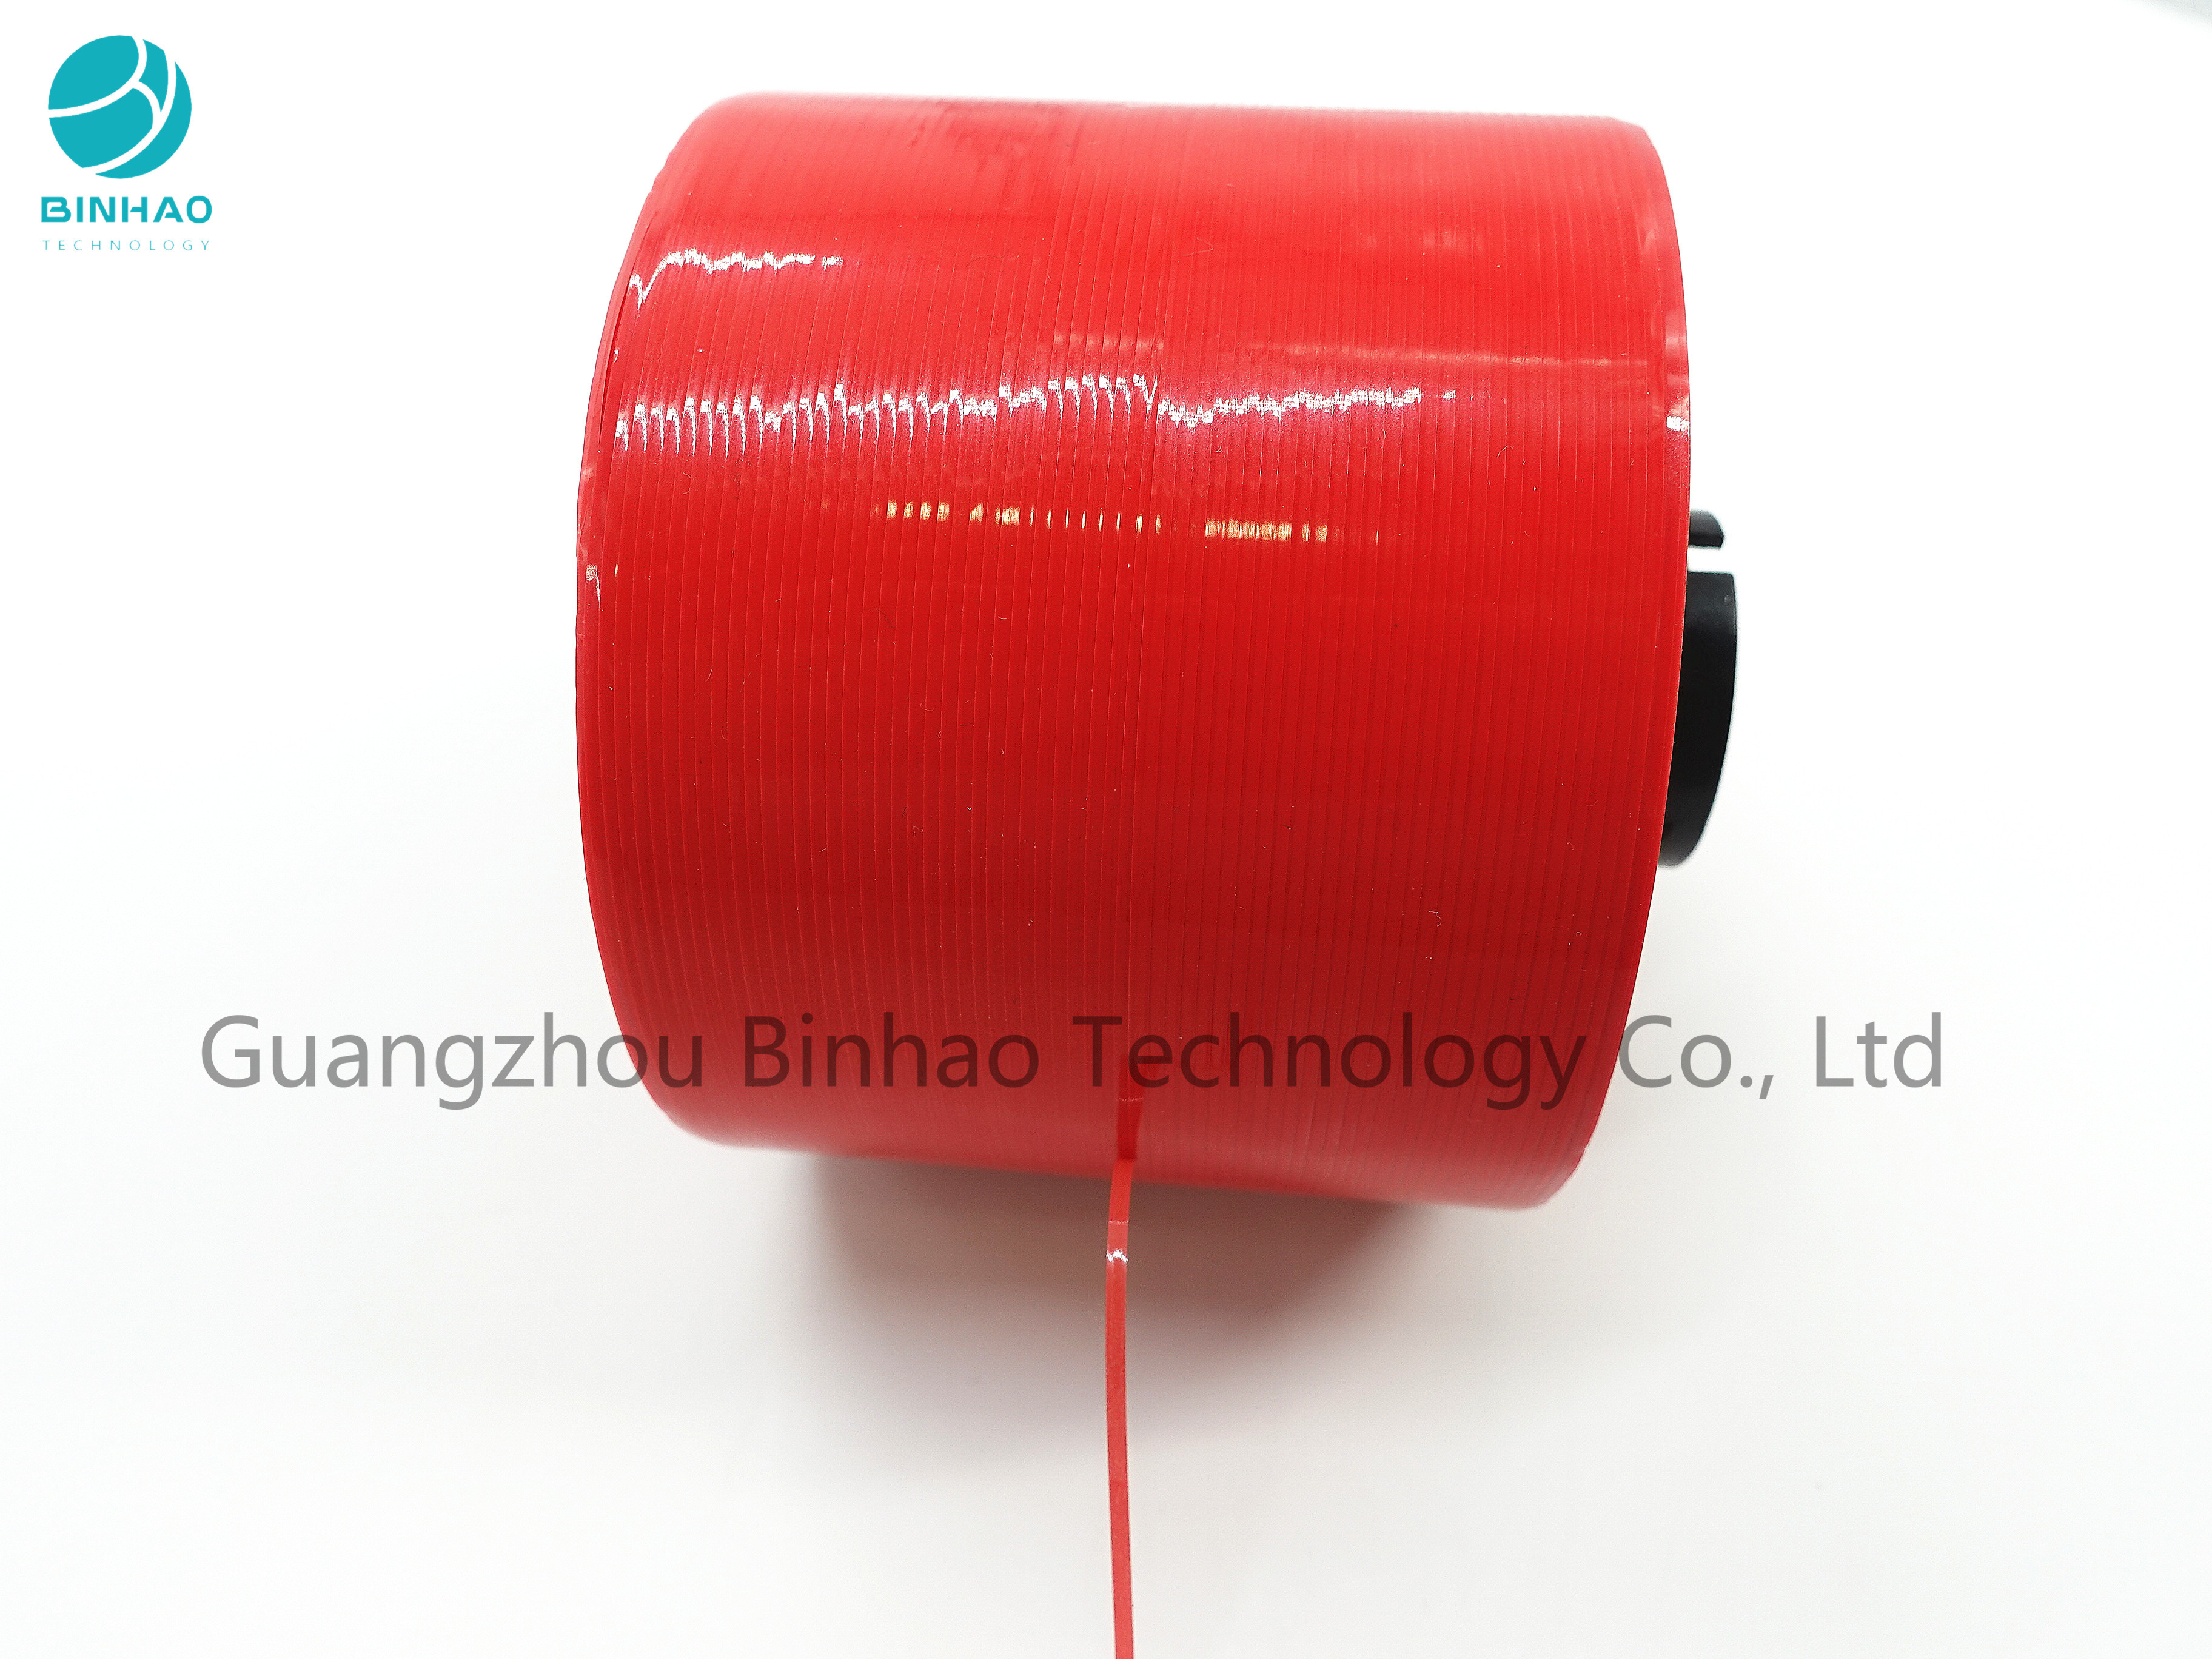 MOPP rosso pieno singolo nastro adesivo laterale della striscia di strappo da 30 micron